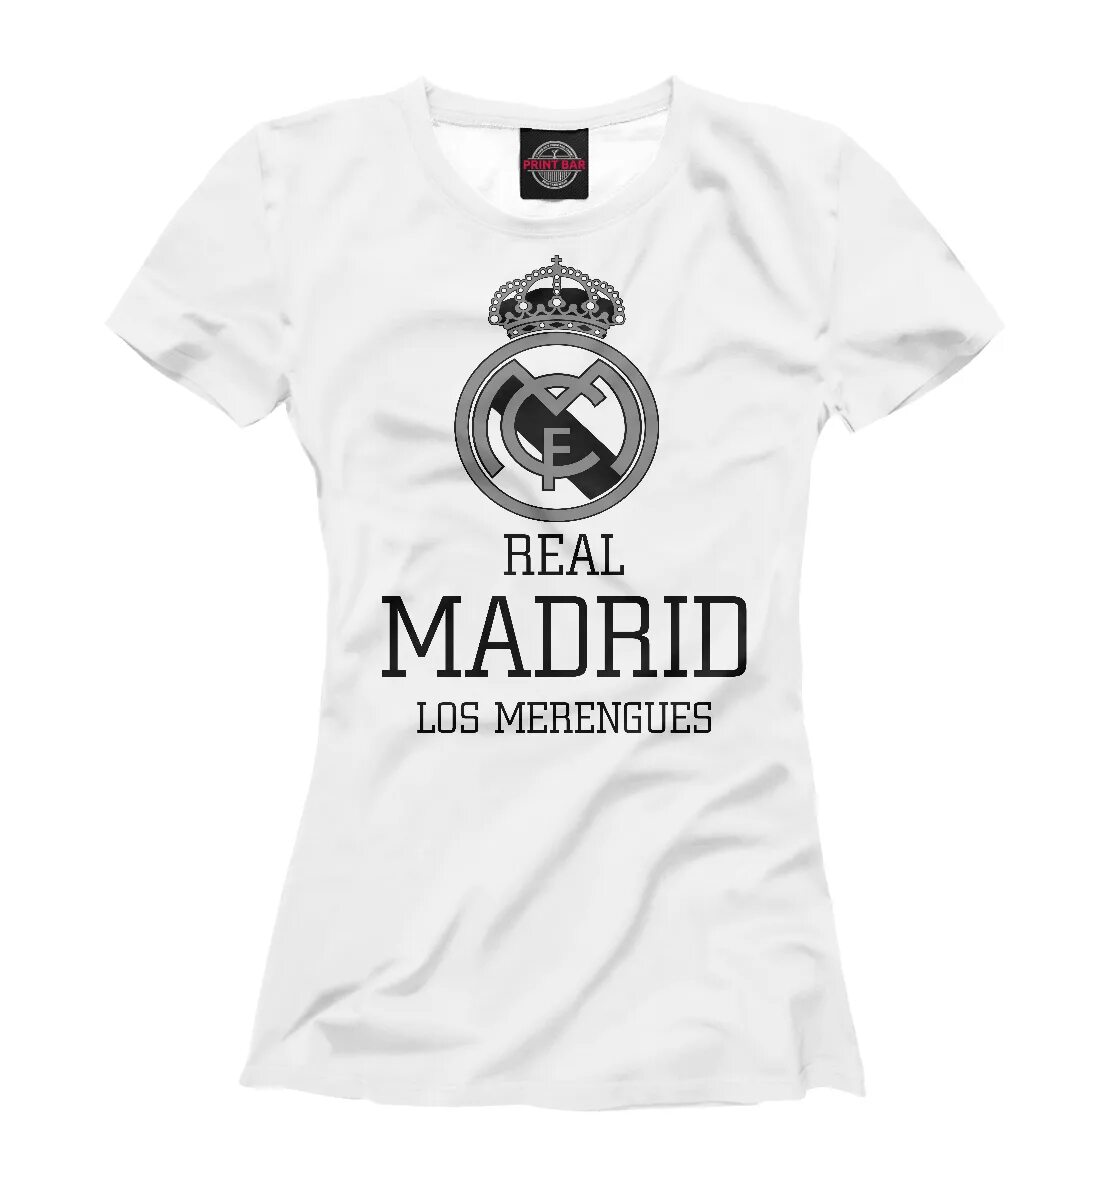 Футболки футболка Реал Мадрид. Футболка снейжер Реал Мадрид. Майка Реал Мадрид. Женские футболки Реал Мадрид.